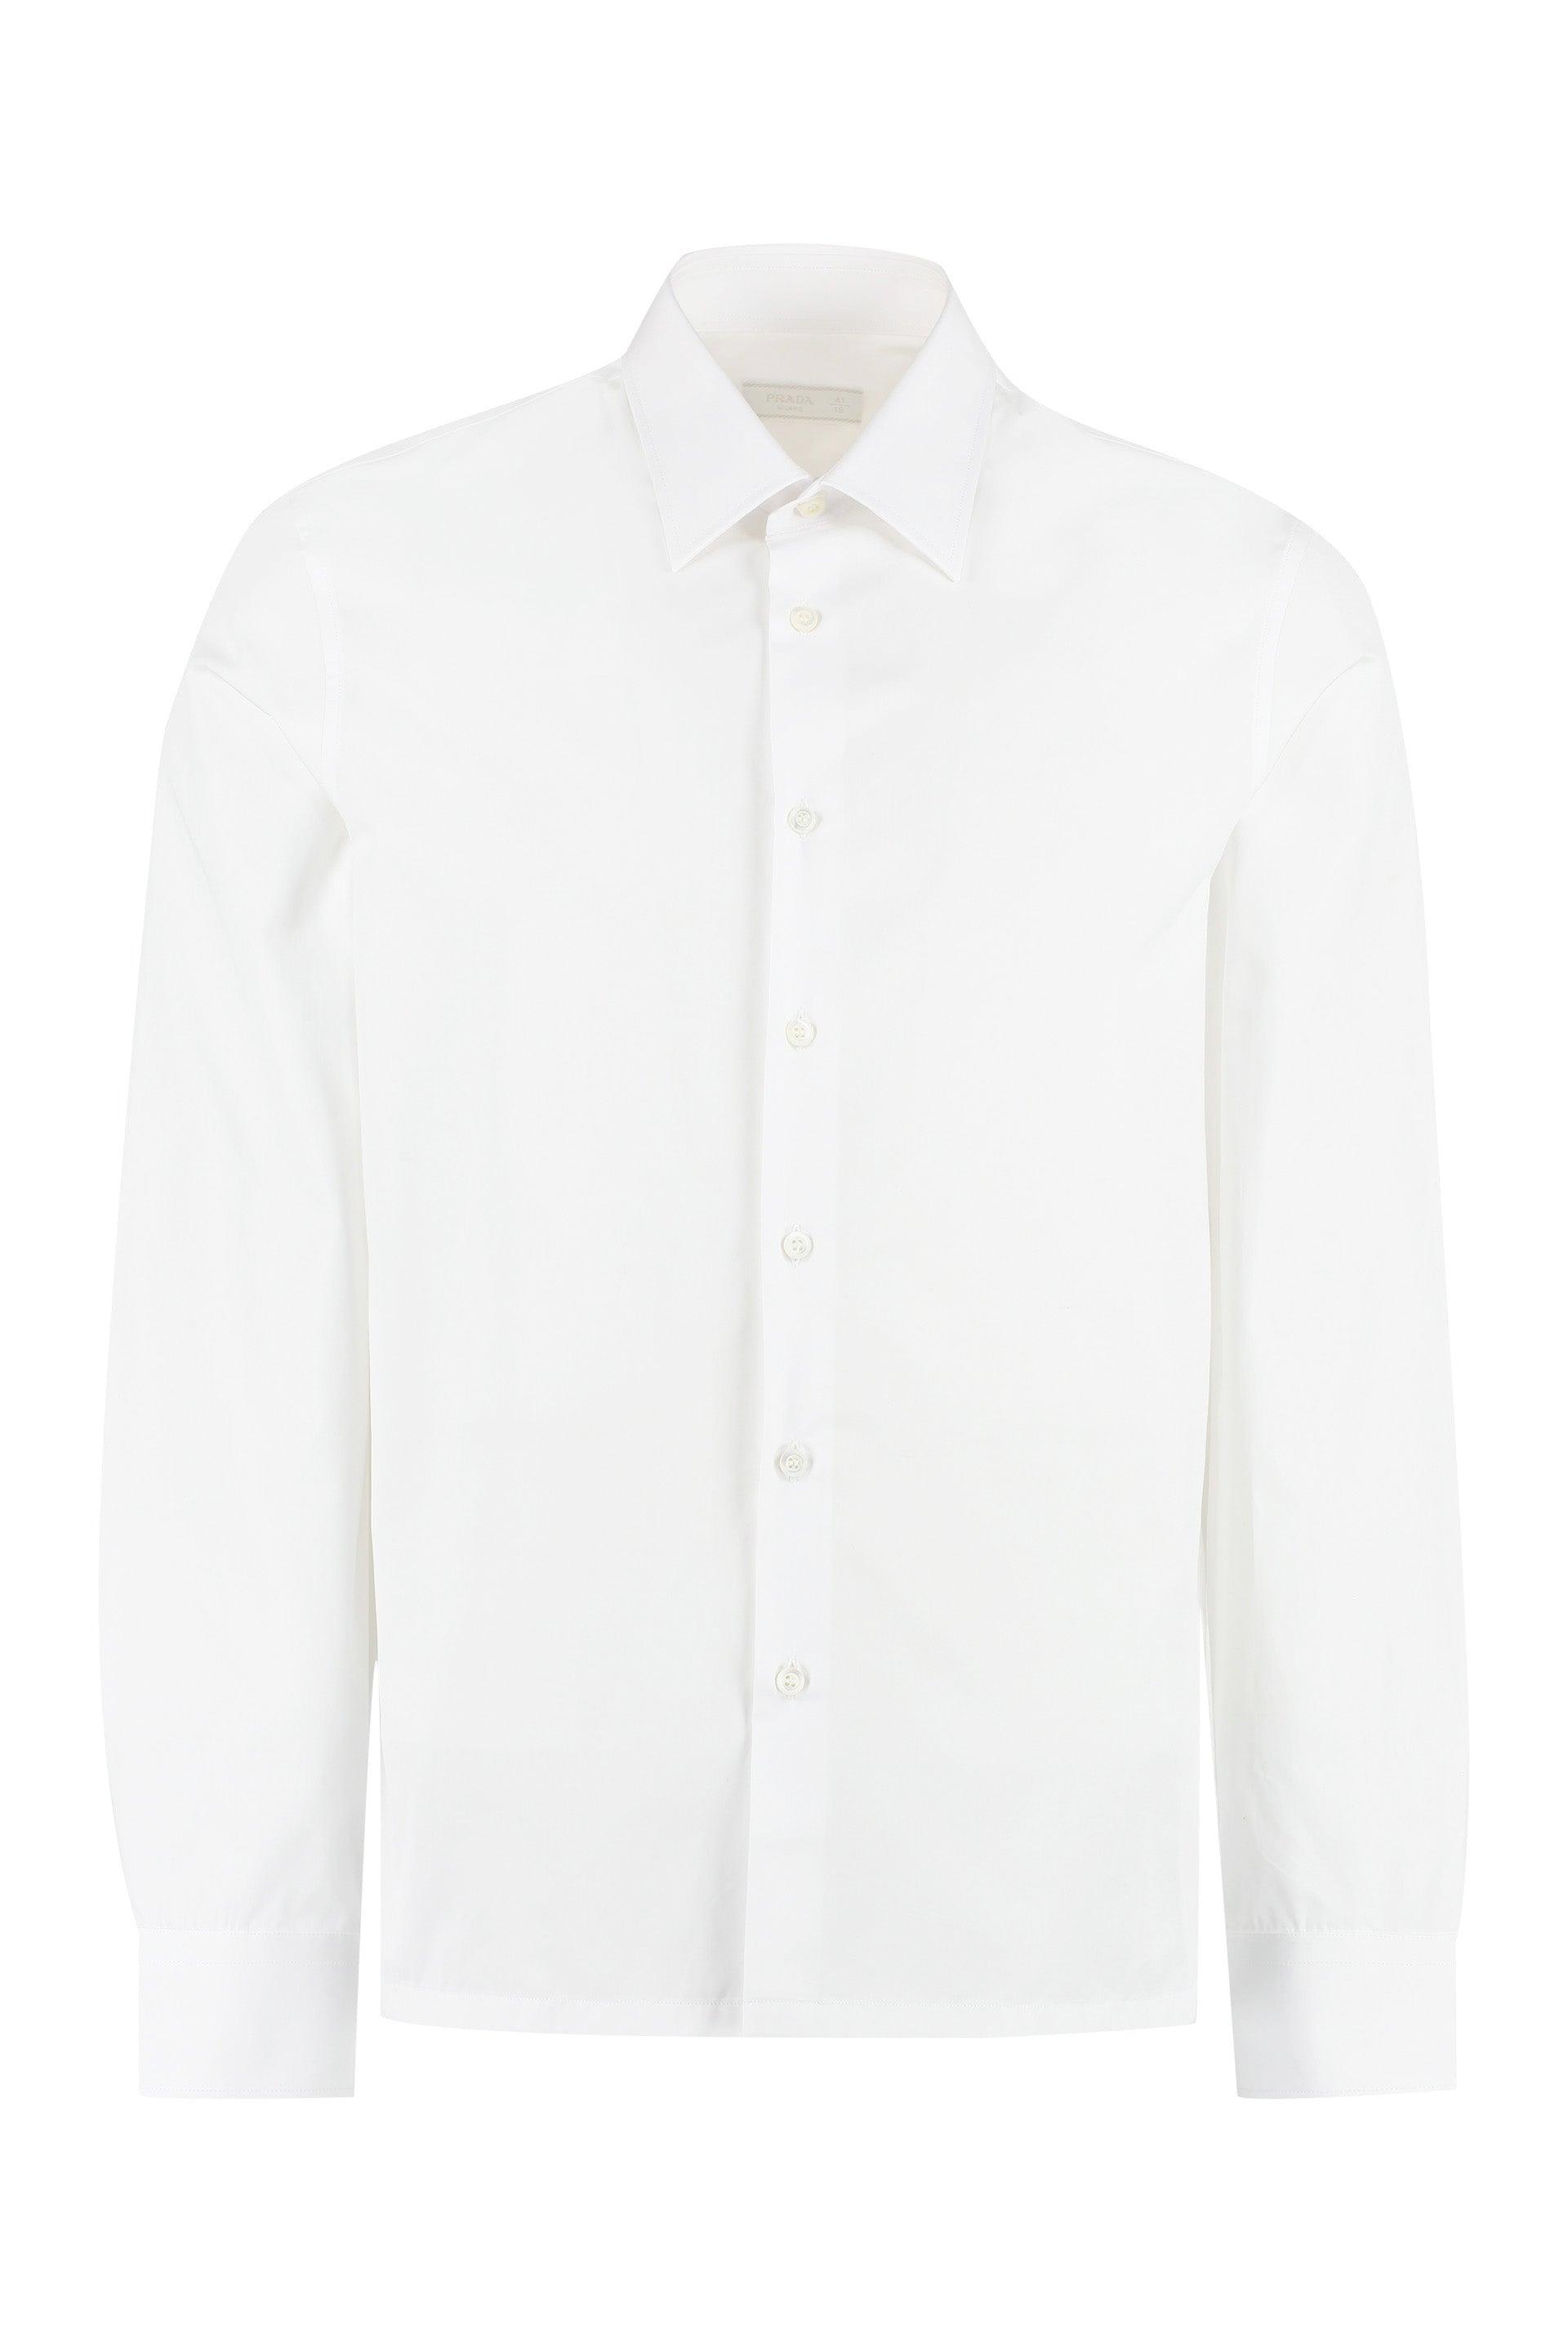 Prada Cotton Poplin Shirt in White for Men | Lyst